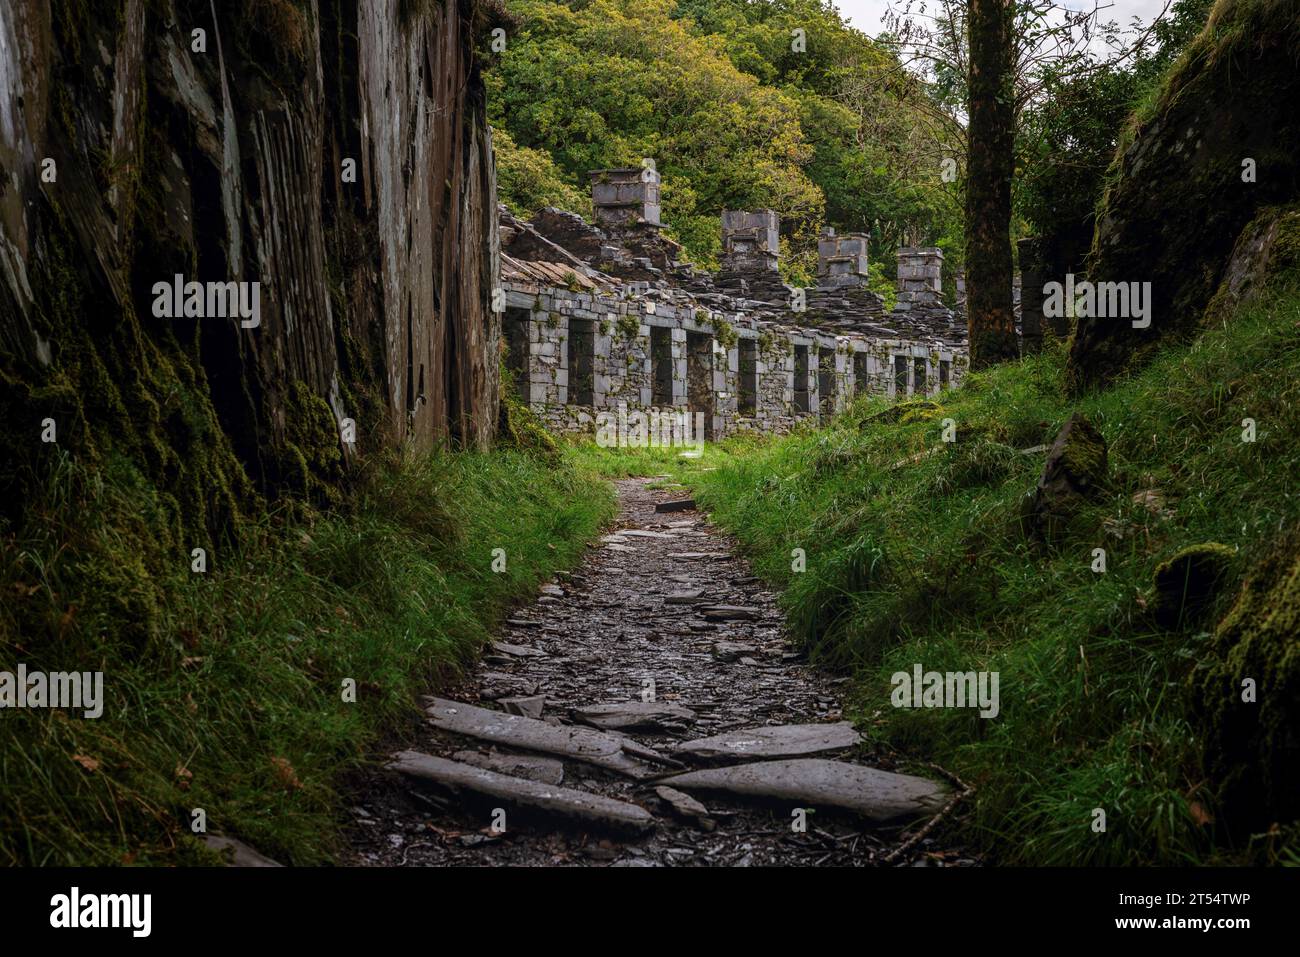 Dinorwic Schieferbruch ist ein ehemaliger Schieferbruch in Wales, der heute zum UNESCO-Weltkulturerbe gehört. Stockfoto